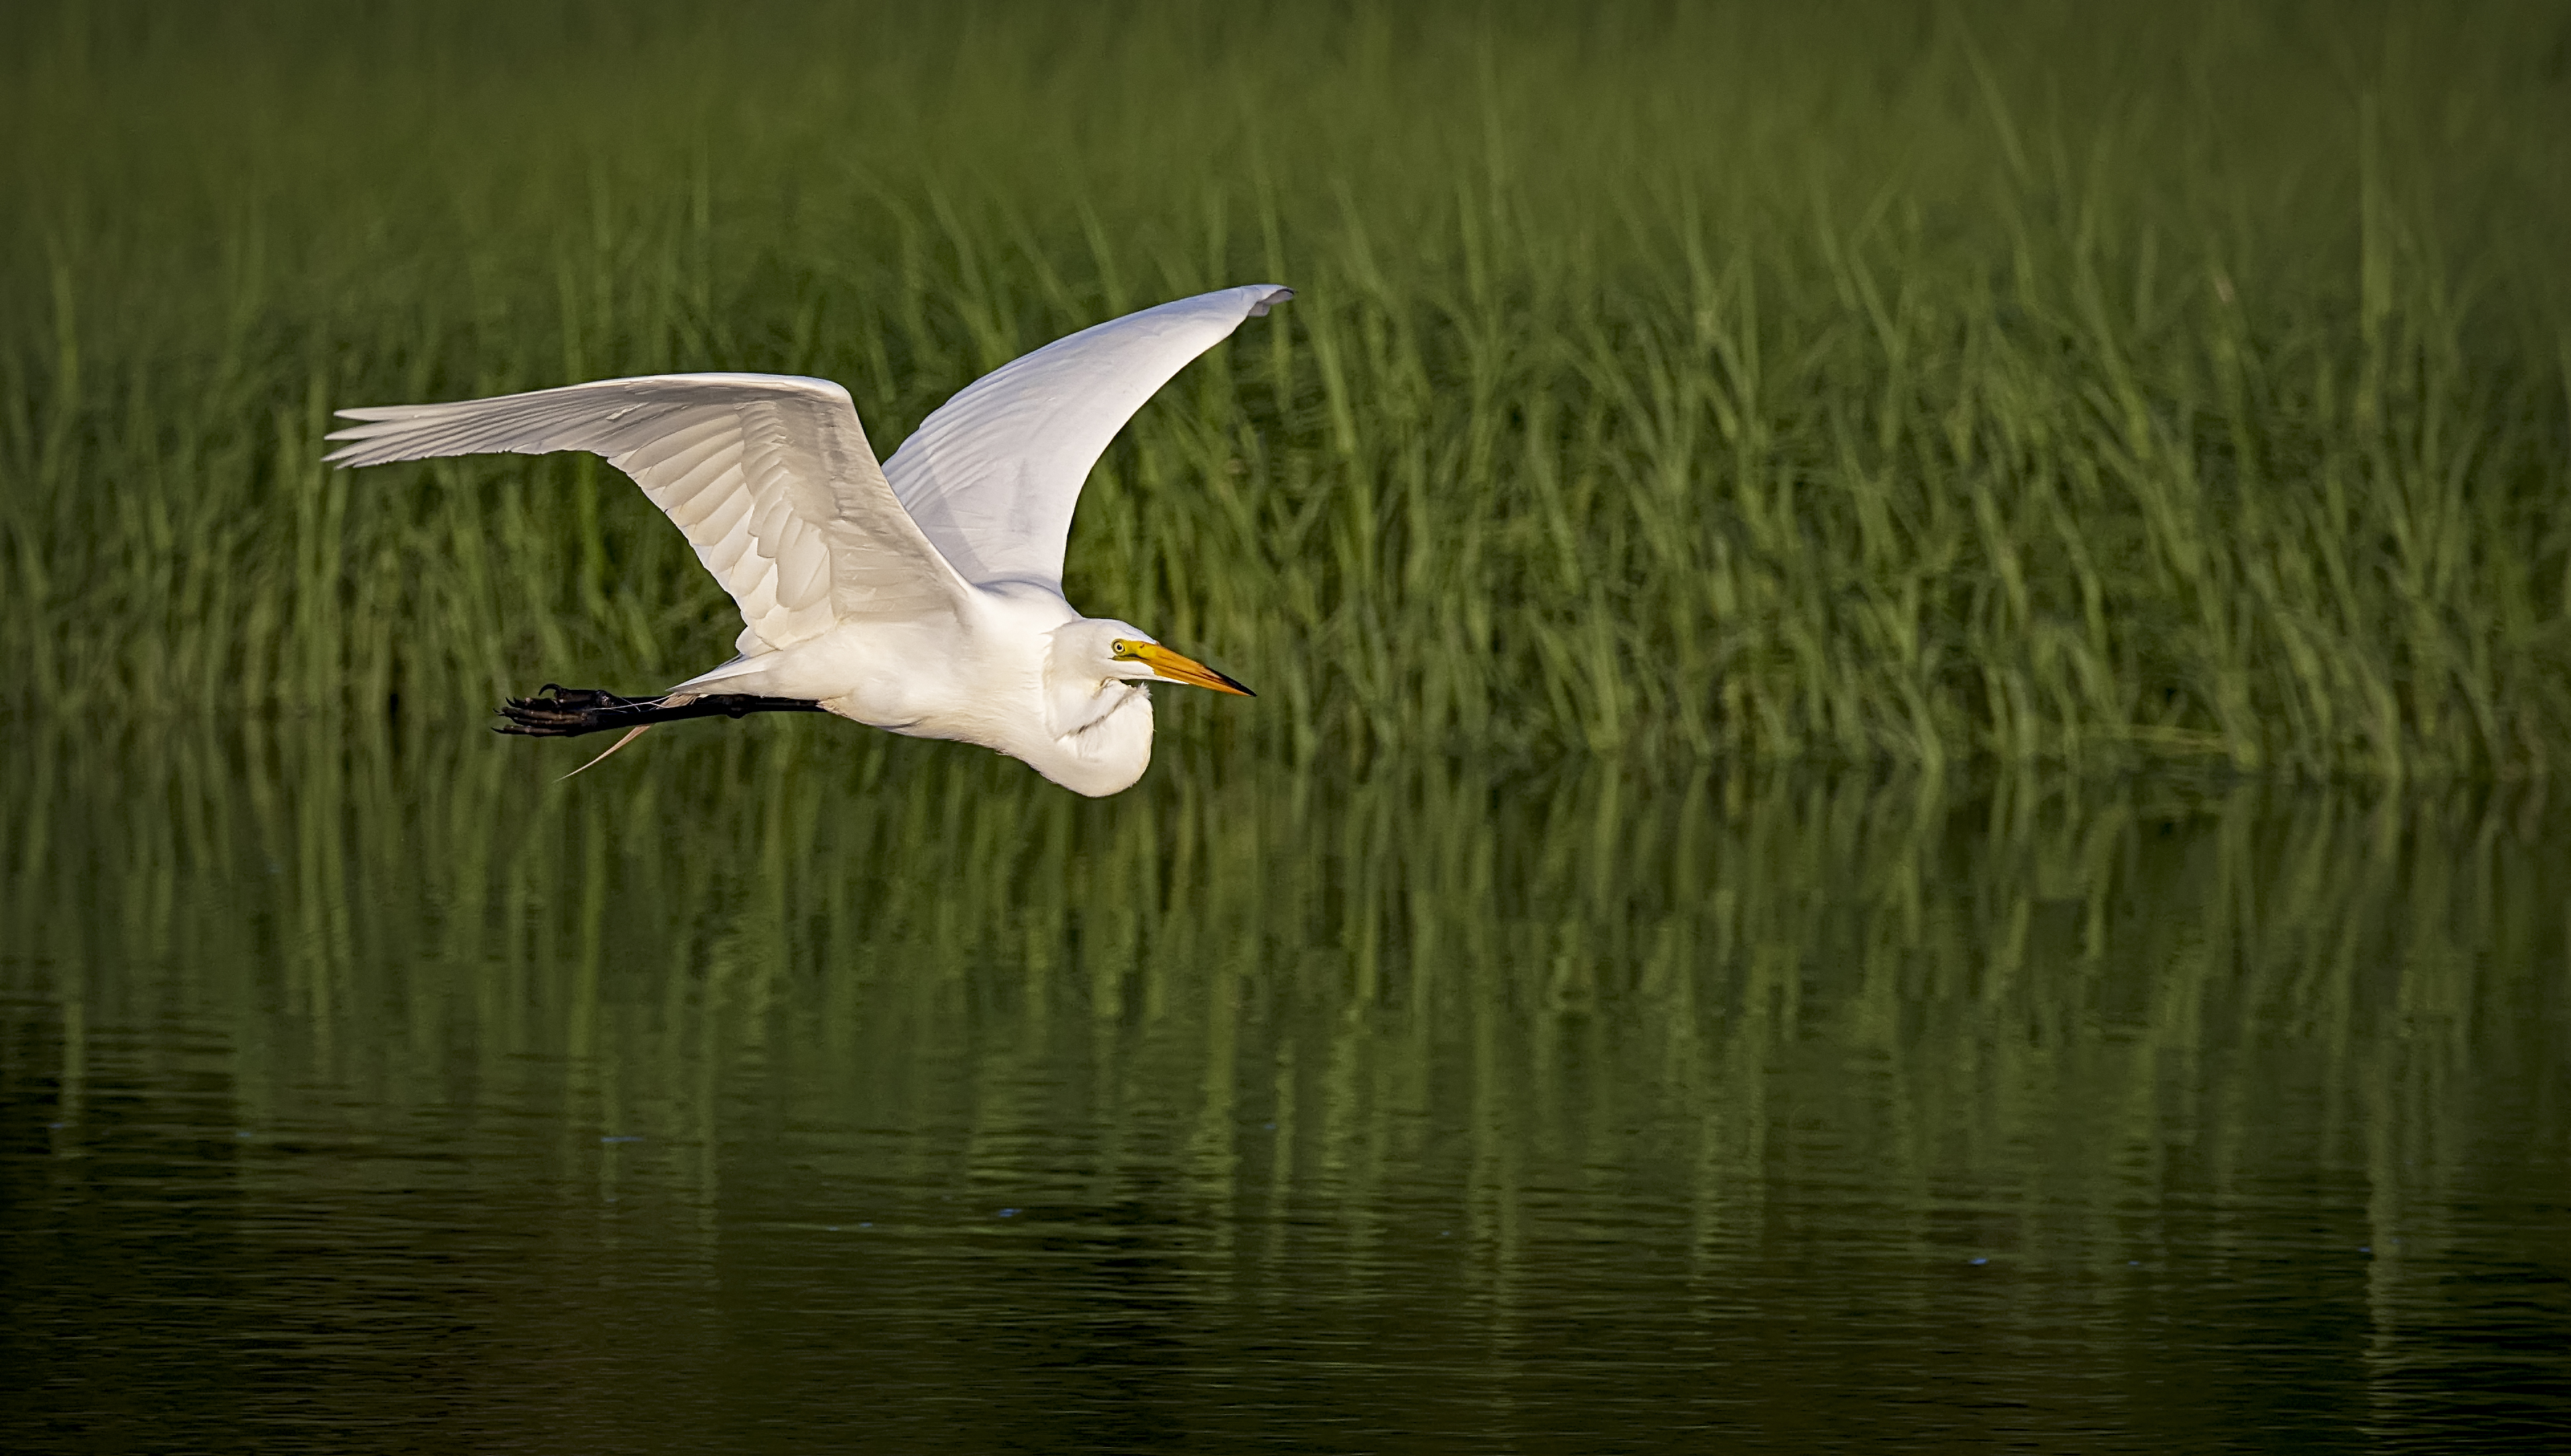 Egret-in-flight-golden-hour